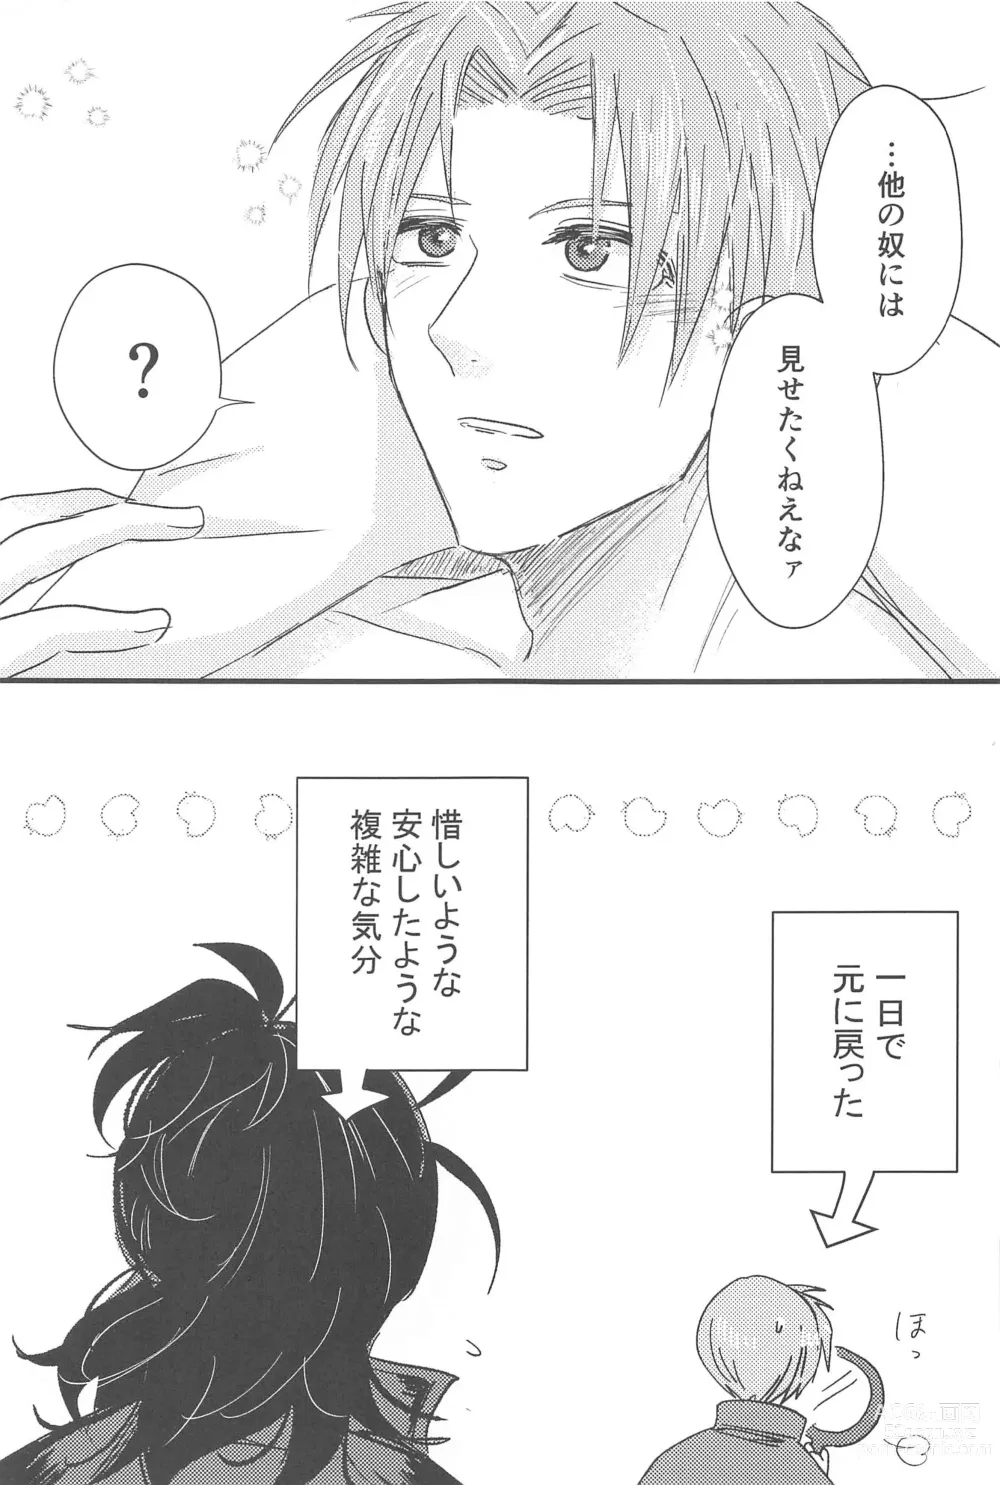 Page 26 of doujinshi Hatsuyo ni Tsugu